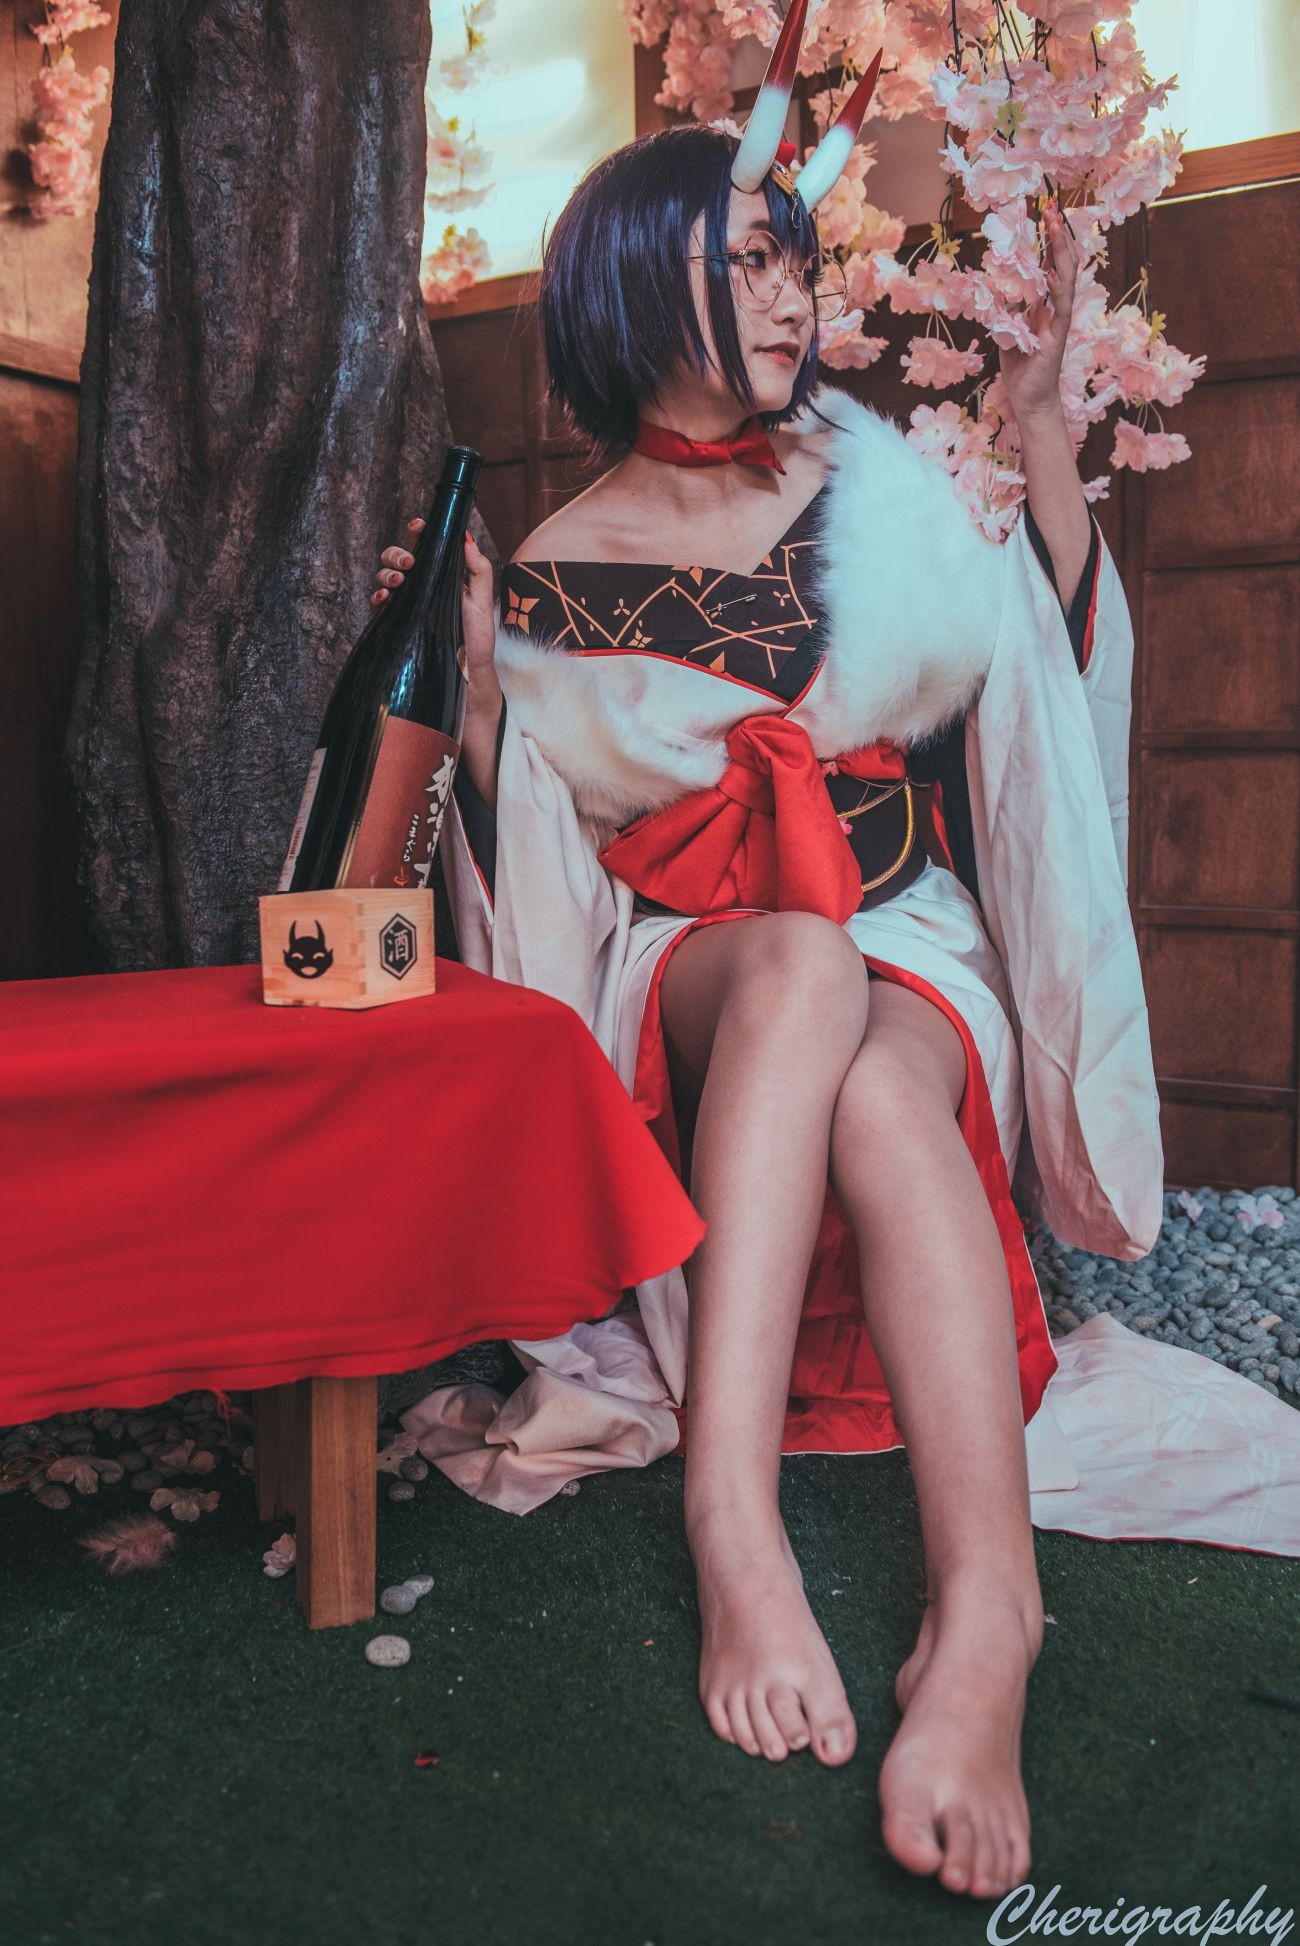 微博美少女Roroki骷髅姫Cosplay性感写真酒吞和服 (12)